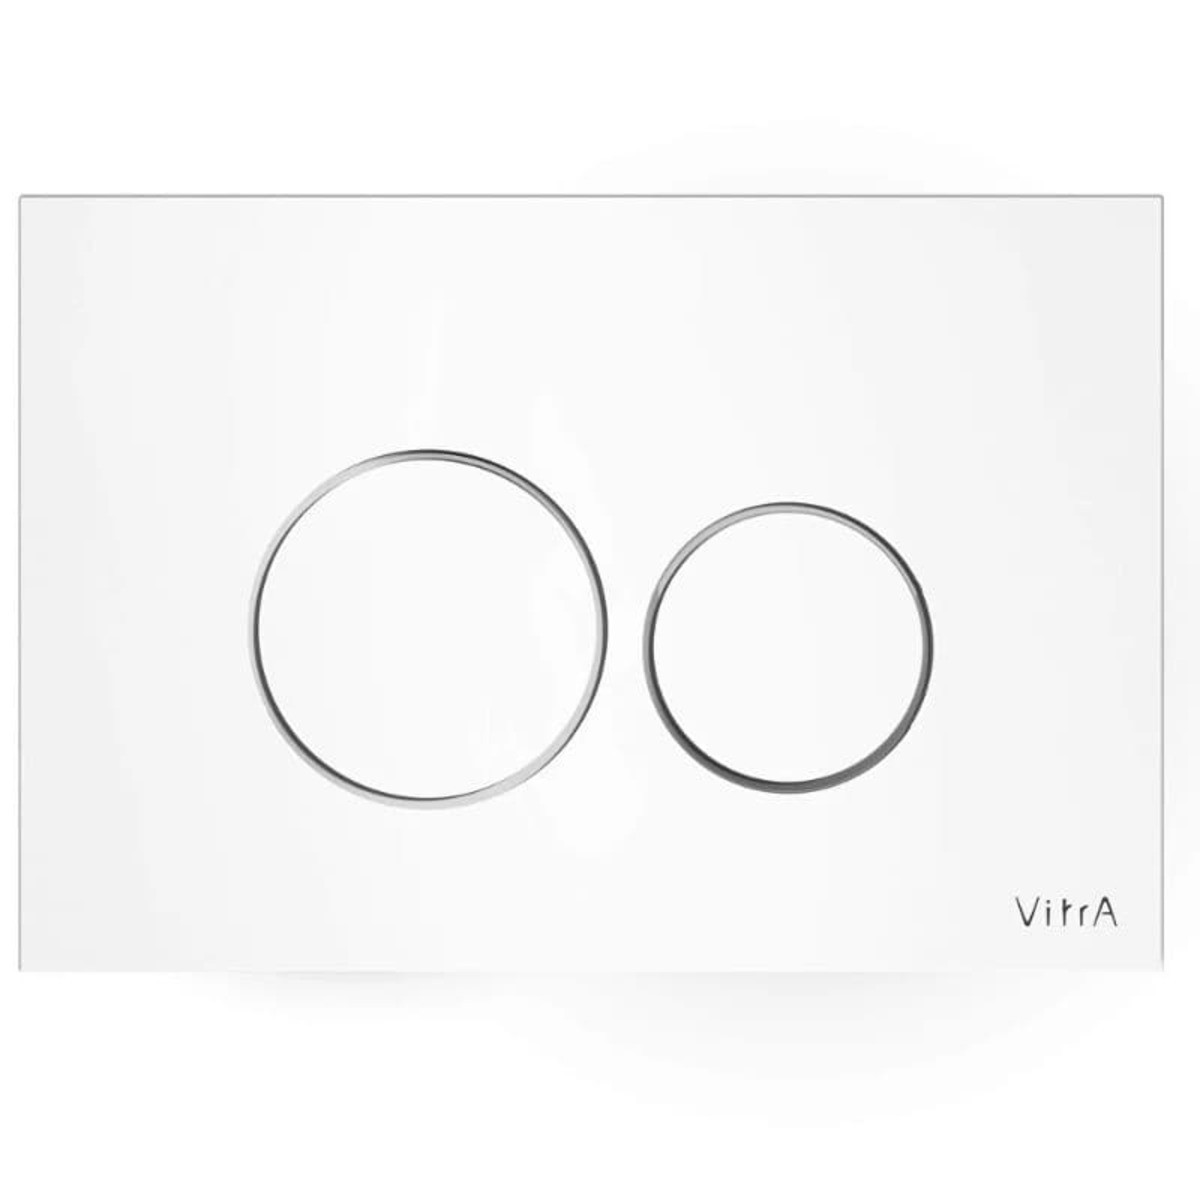 Ovládací tlačítko VitrA Vetro skleněné bílé 740-1600